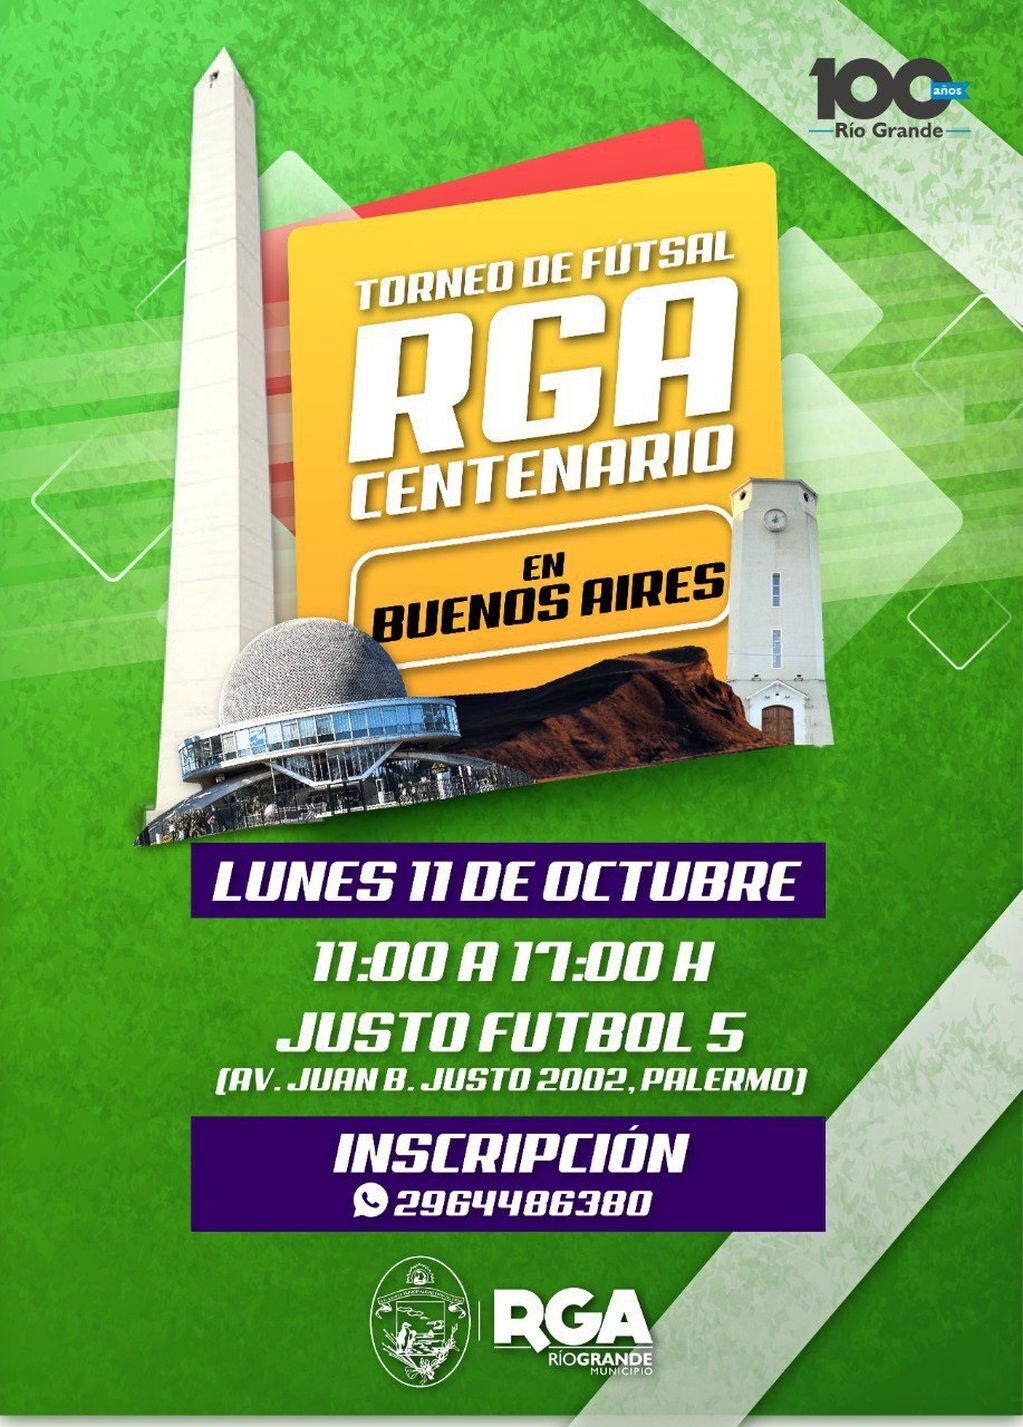 El Municipio de Río Grande organiza en la ciudad de Buenos Aires, torneo aniversario de Futsal.